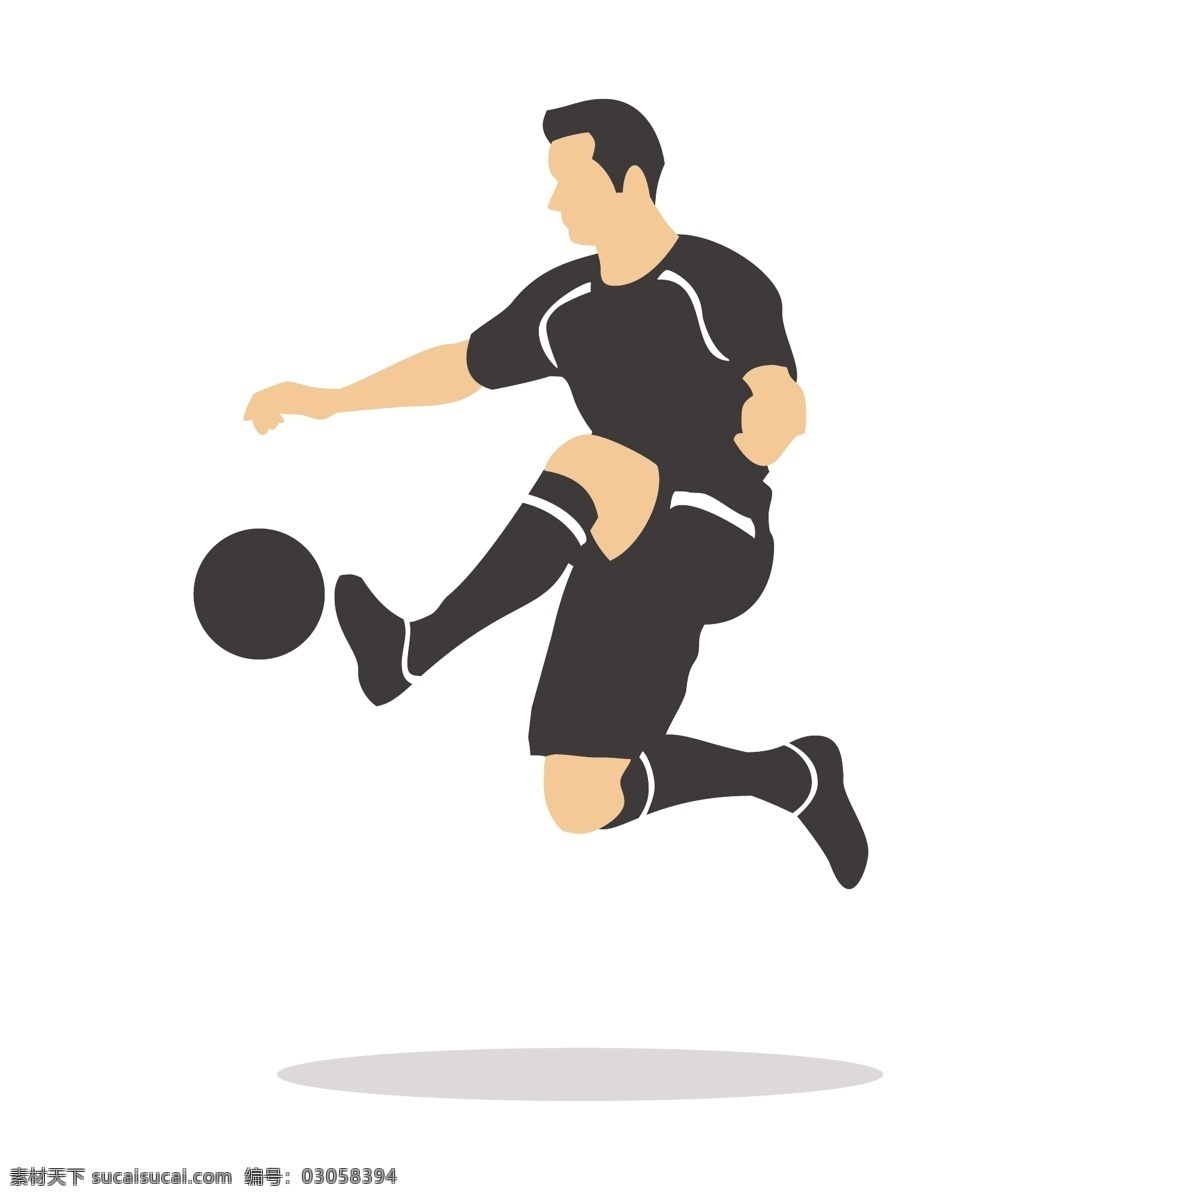 脚尖 挡球 矢量 足球 足球运动 踢足球 姿势 踢球姿势 运动姿势 体育 体育运动 踢球动作 动作姿势